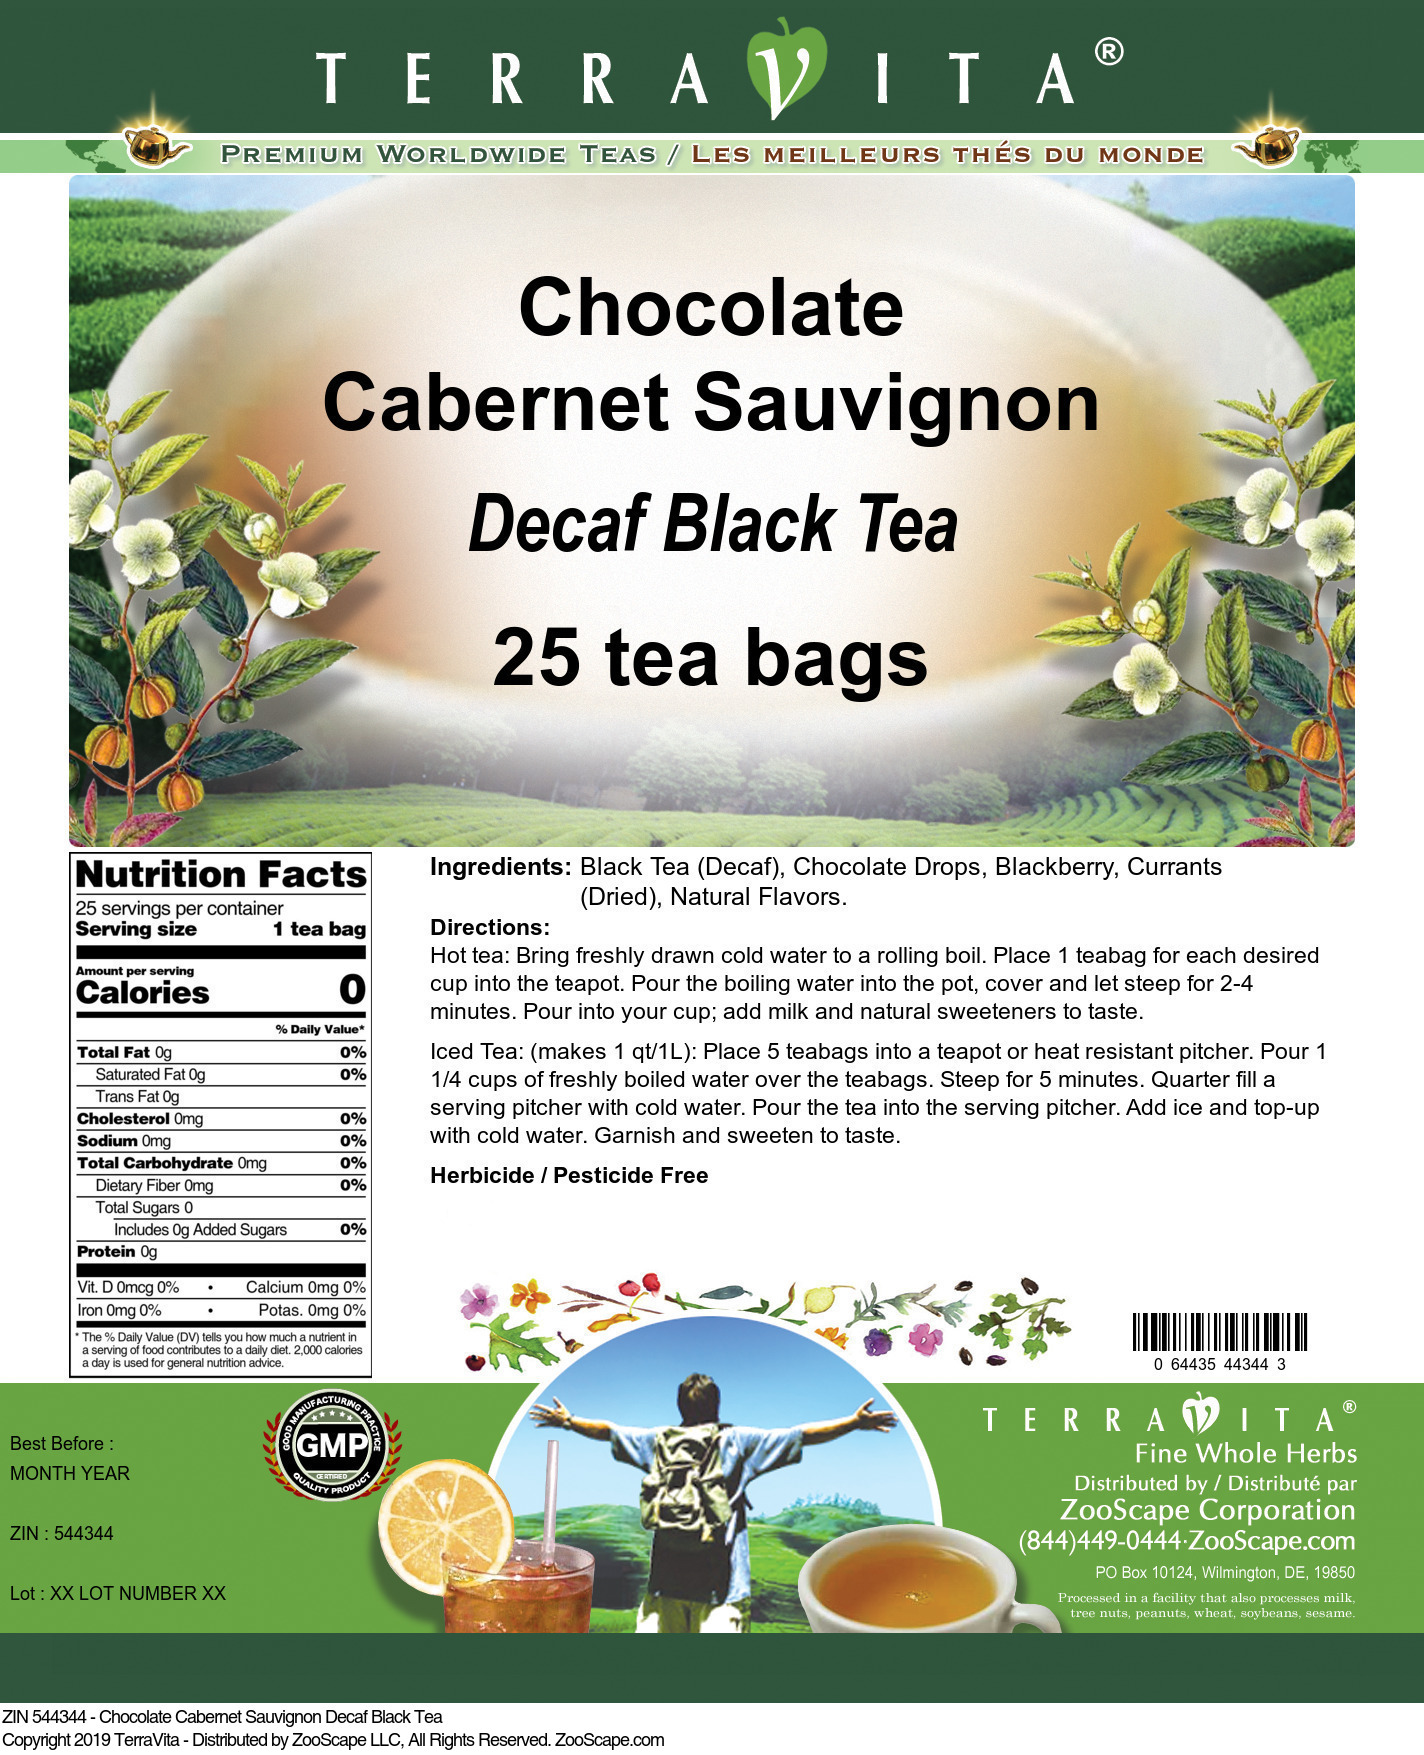 Chocolate Cabernet Sauvignon Decaf Black Tea - Label